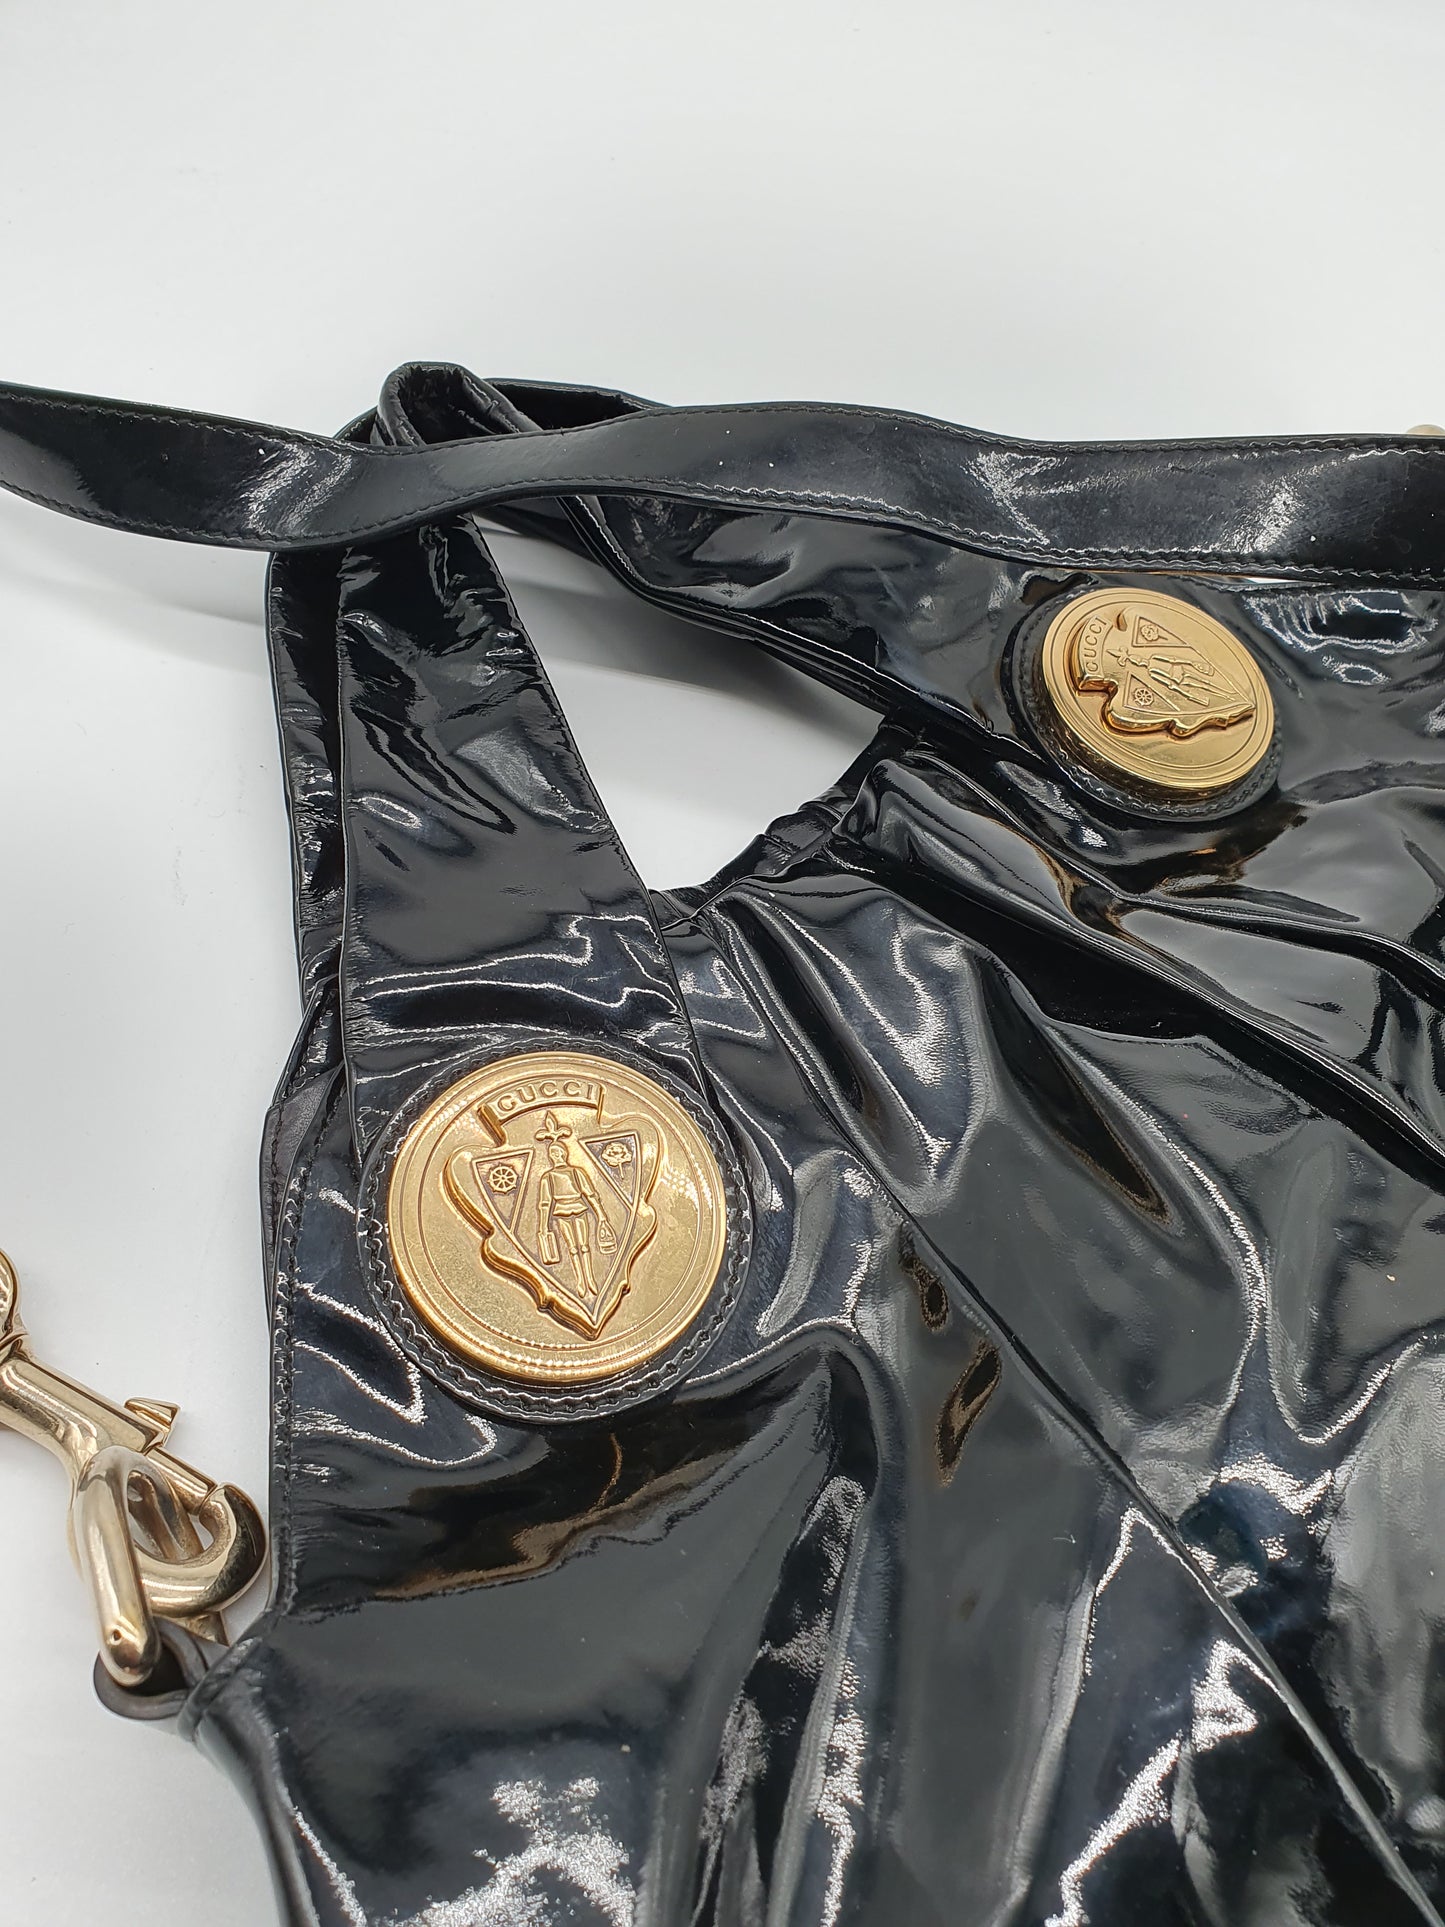 Gucci Hysteria handbag